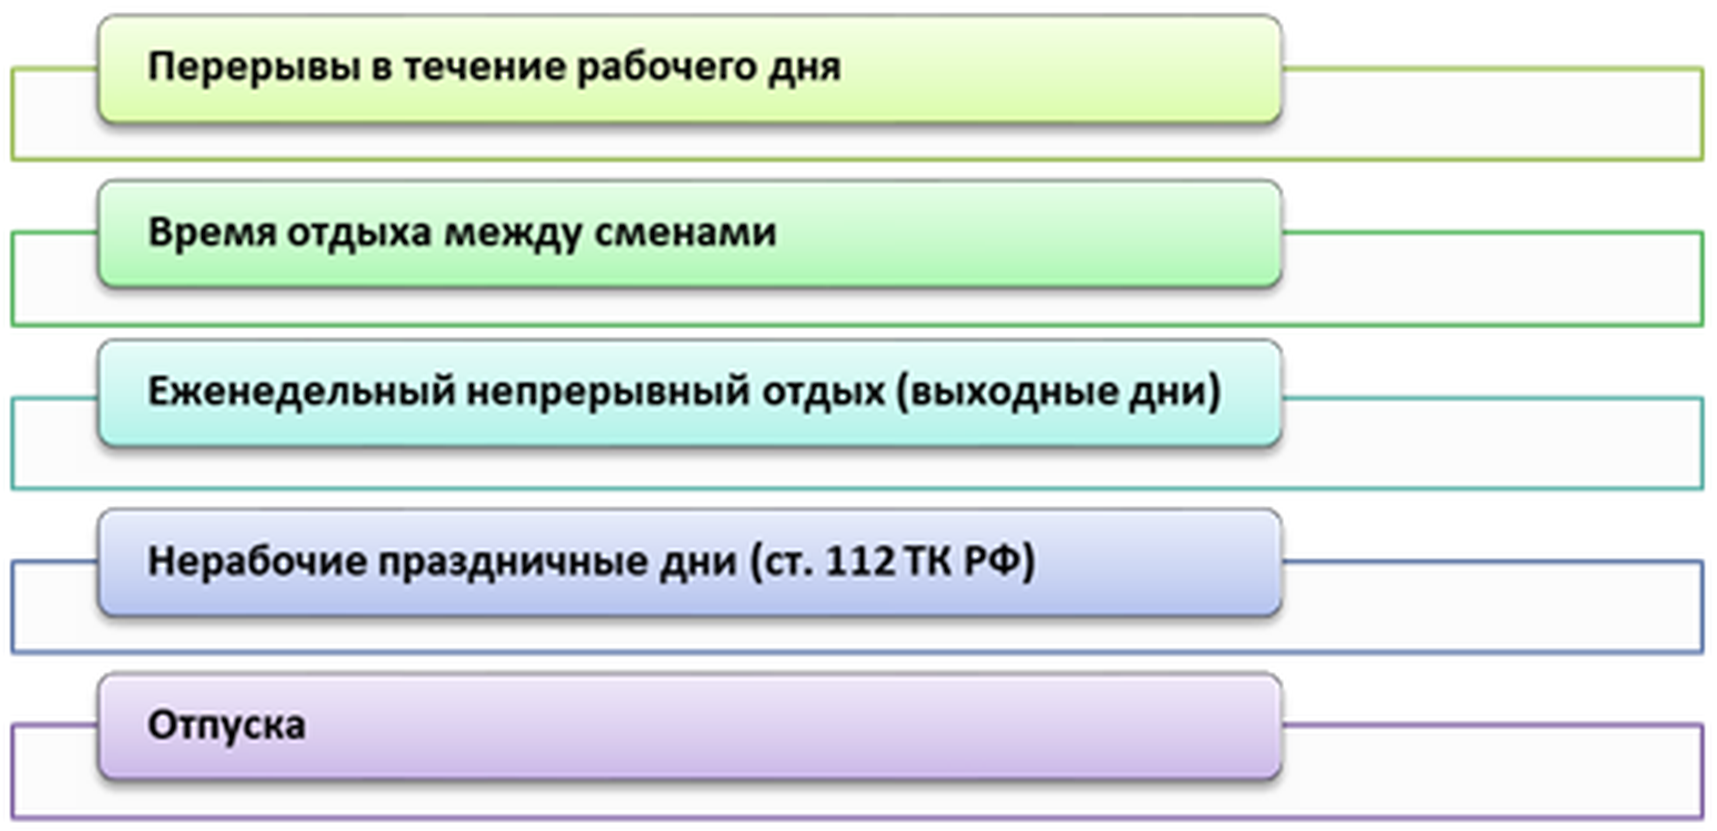 Виды времени отдыха по ТК РФ и их продолжительность